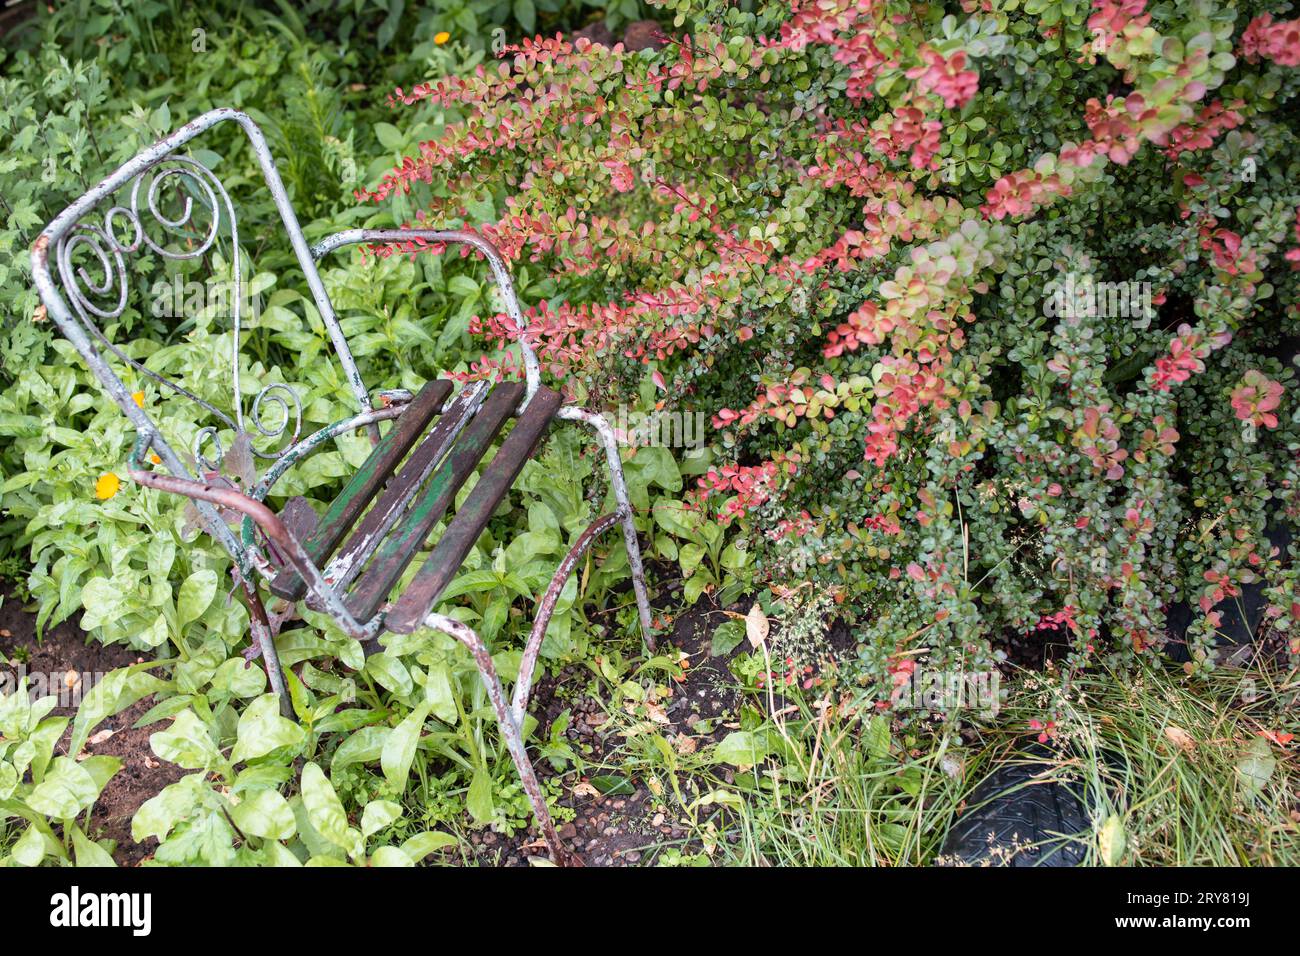 Ein alter Metalldrahtstuhl in einem privaten Bereich, neben einem Berberis Thunbergii, Atropurpurea Goldringpflanze, Garten voller Ziergras und fl Stockfoto